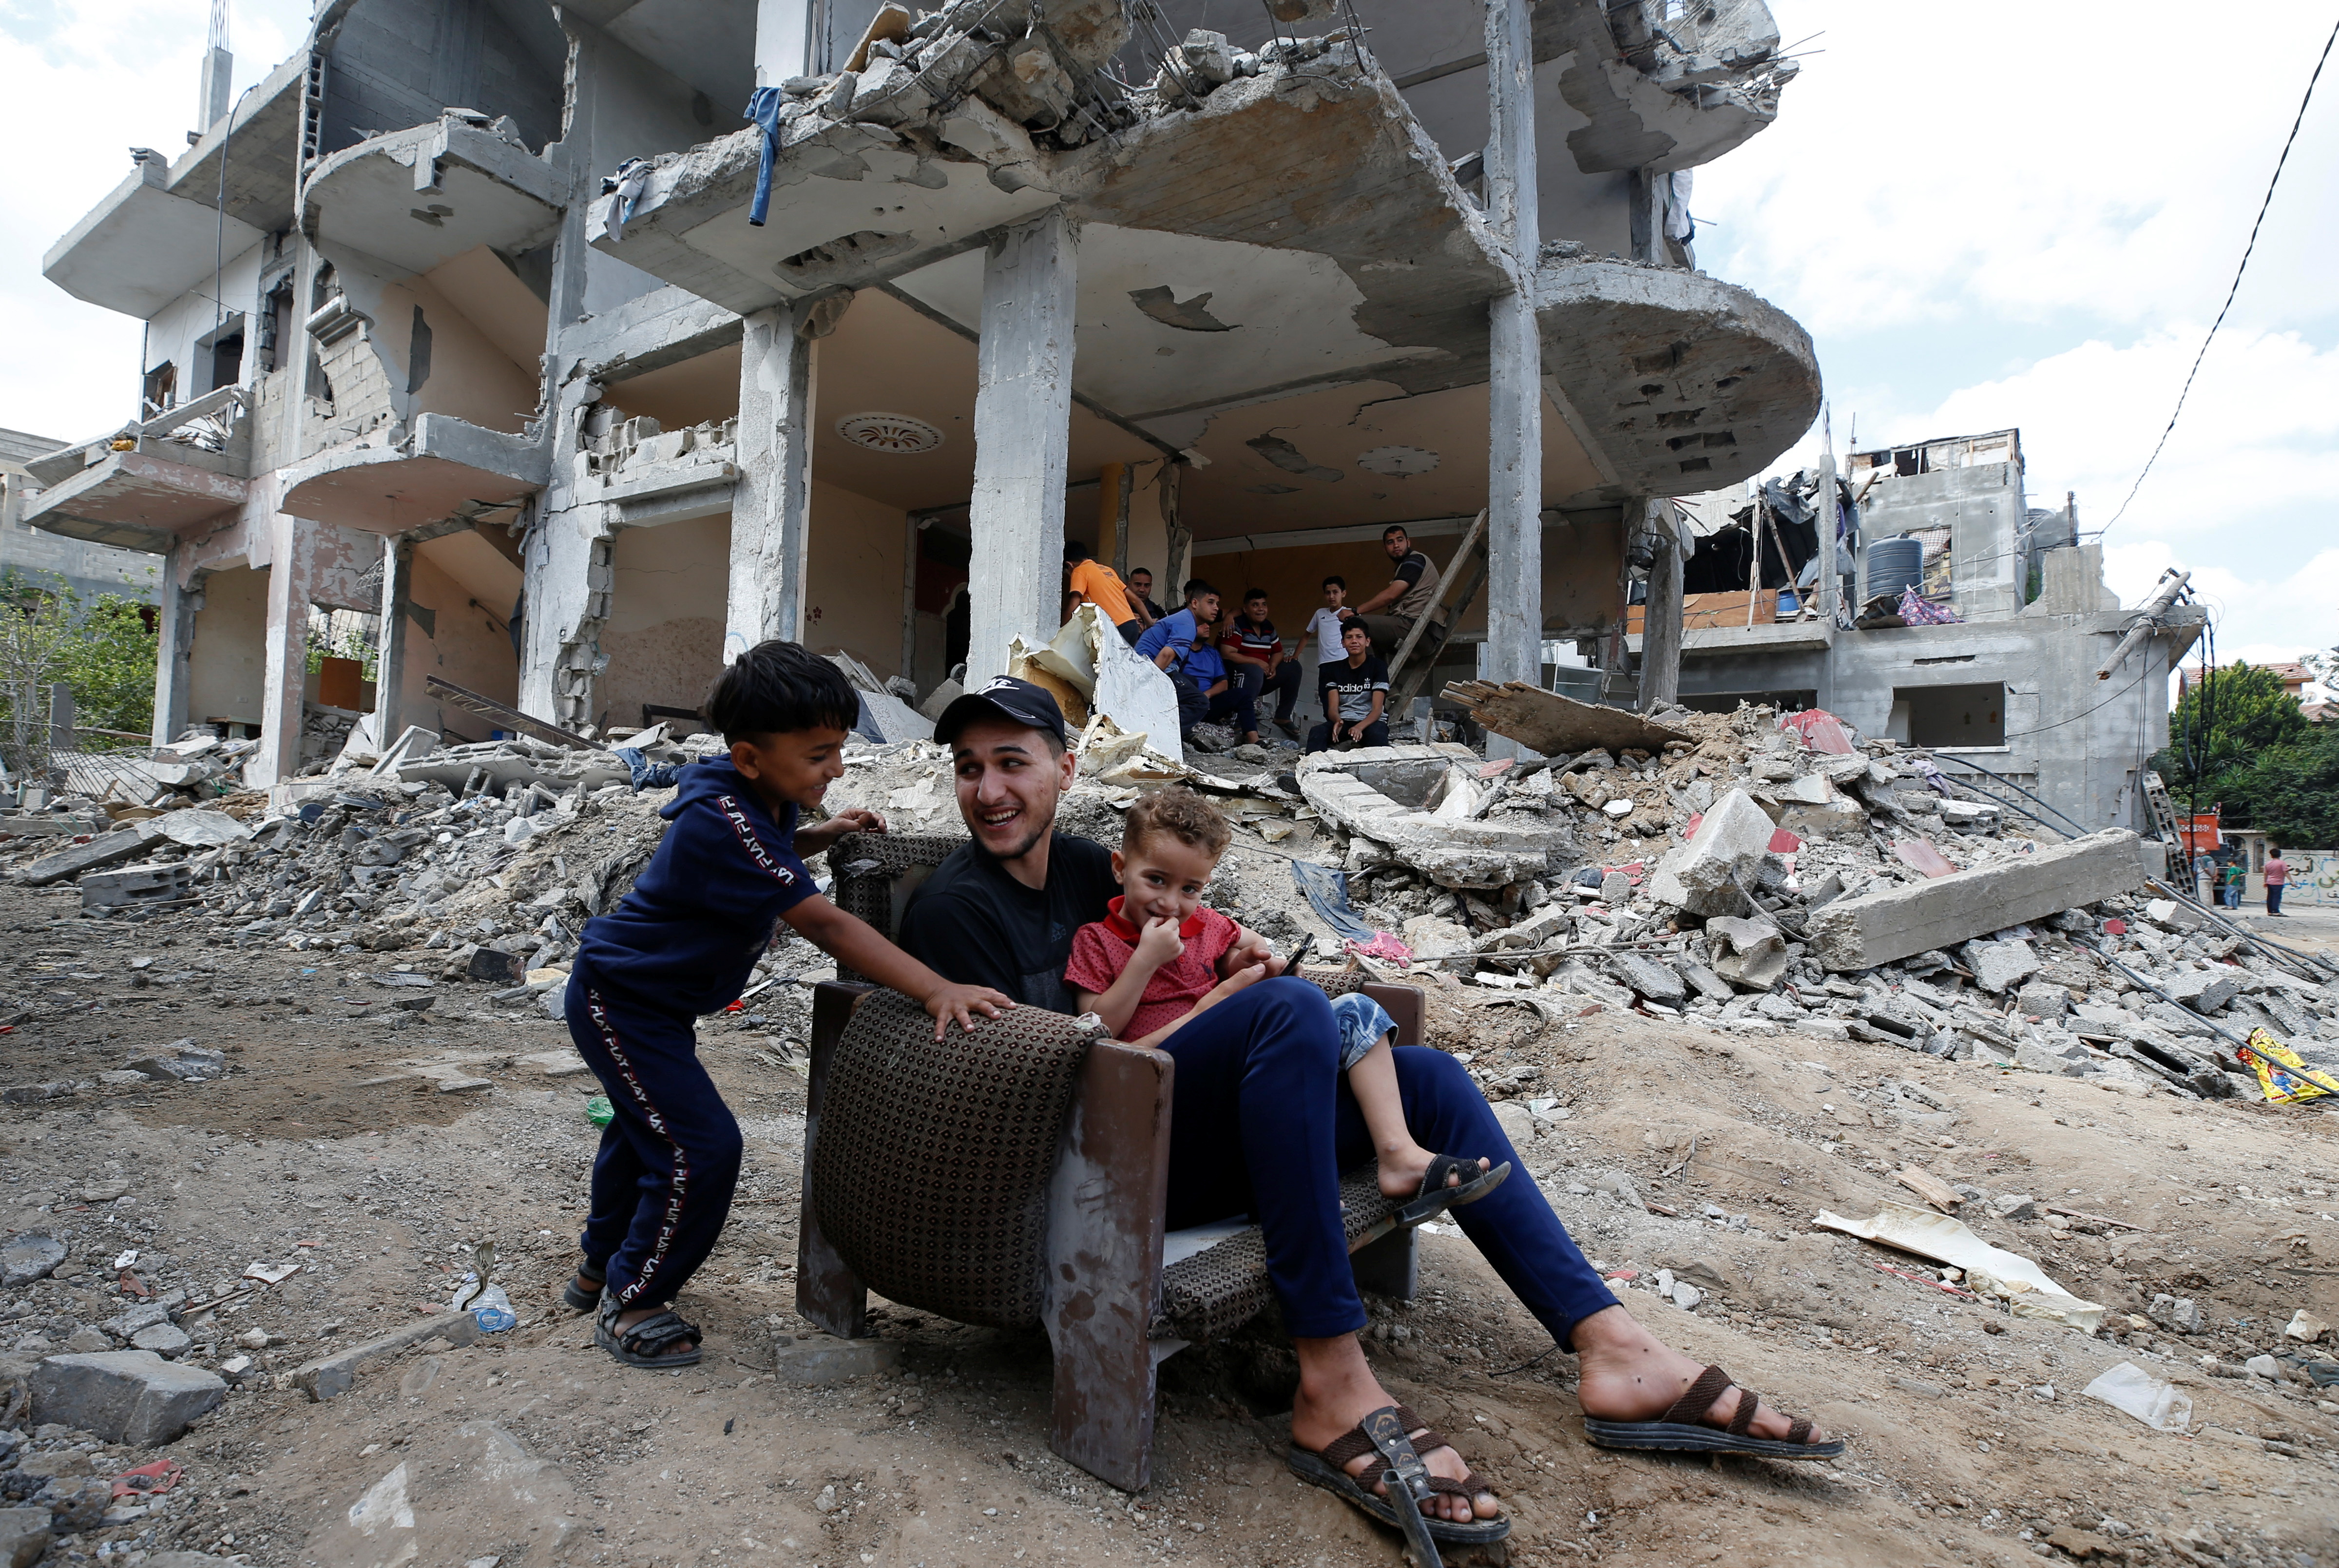 Палестынцы сядзяць на крэсле сярод абломкаў будынка, які быў пашкоджаны ў выніку ізраільскіх авіяўдараў падчас баёў паміж Ізраілем і ХАМАС у Газе 23 мая 2021 г. REUTERS/Mohammed Salem